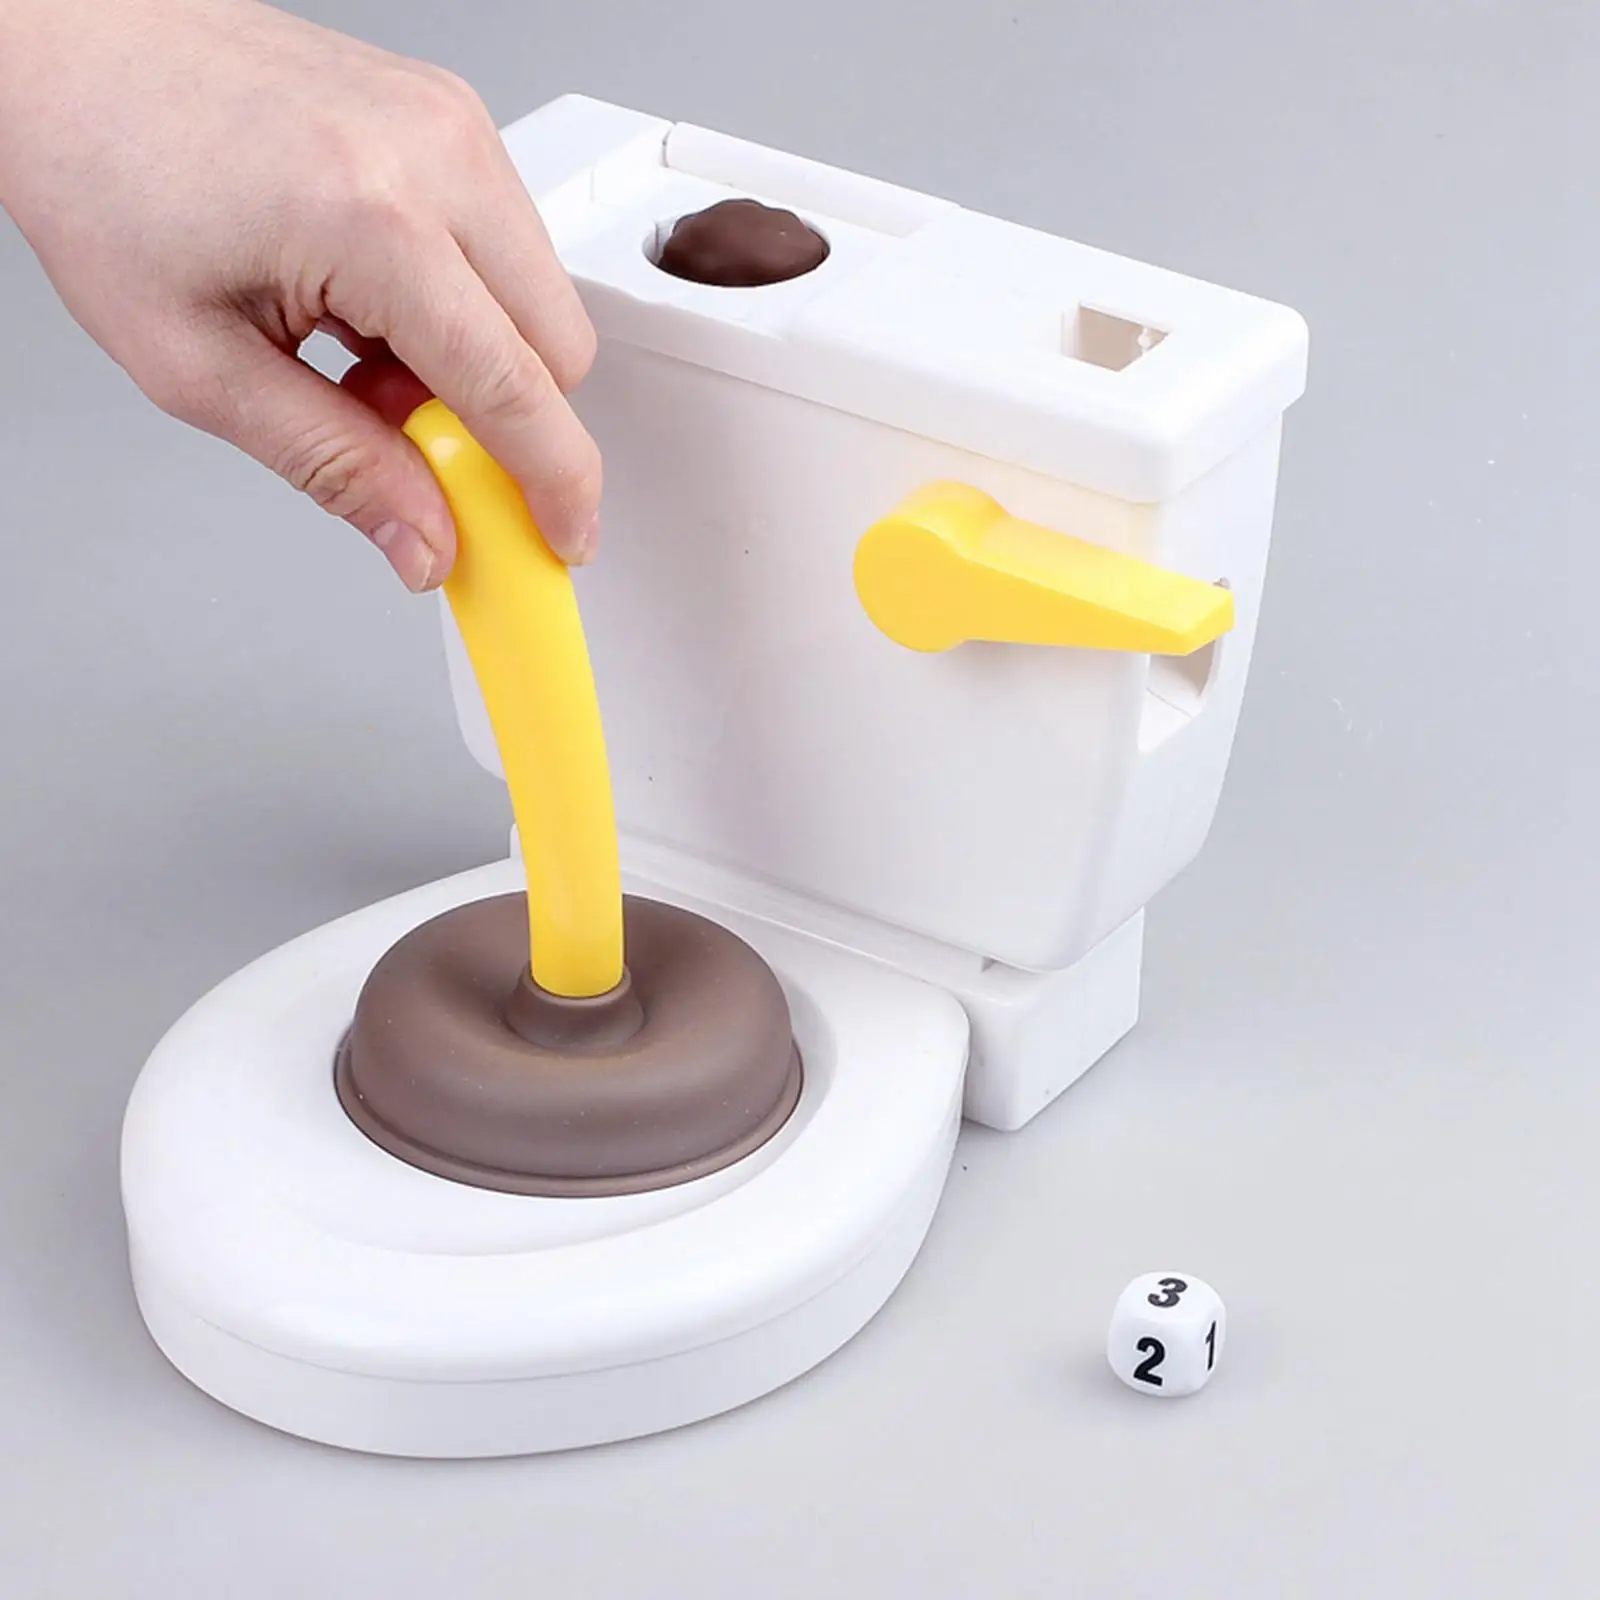 Strange Pooping Toilet Game Prank Joke Toy Hilarious Prankster Joke Stuff Tricky Toys for Children Family Kids Boys Girls Adults